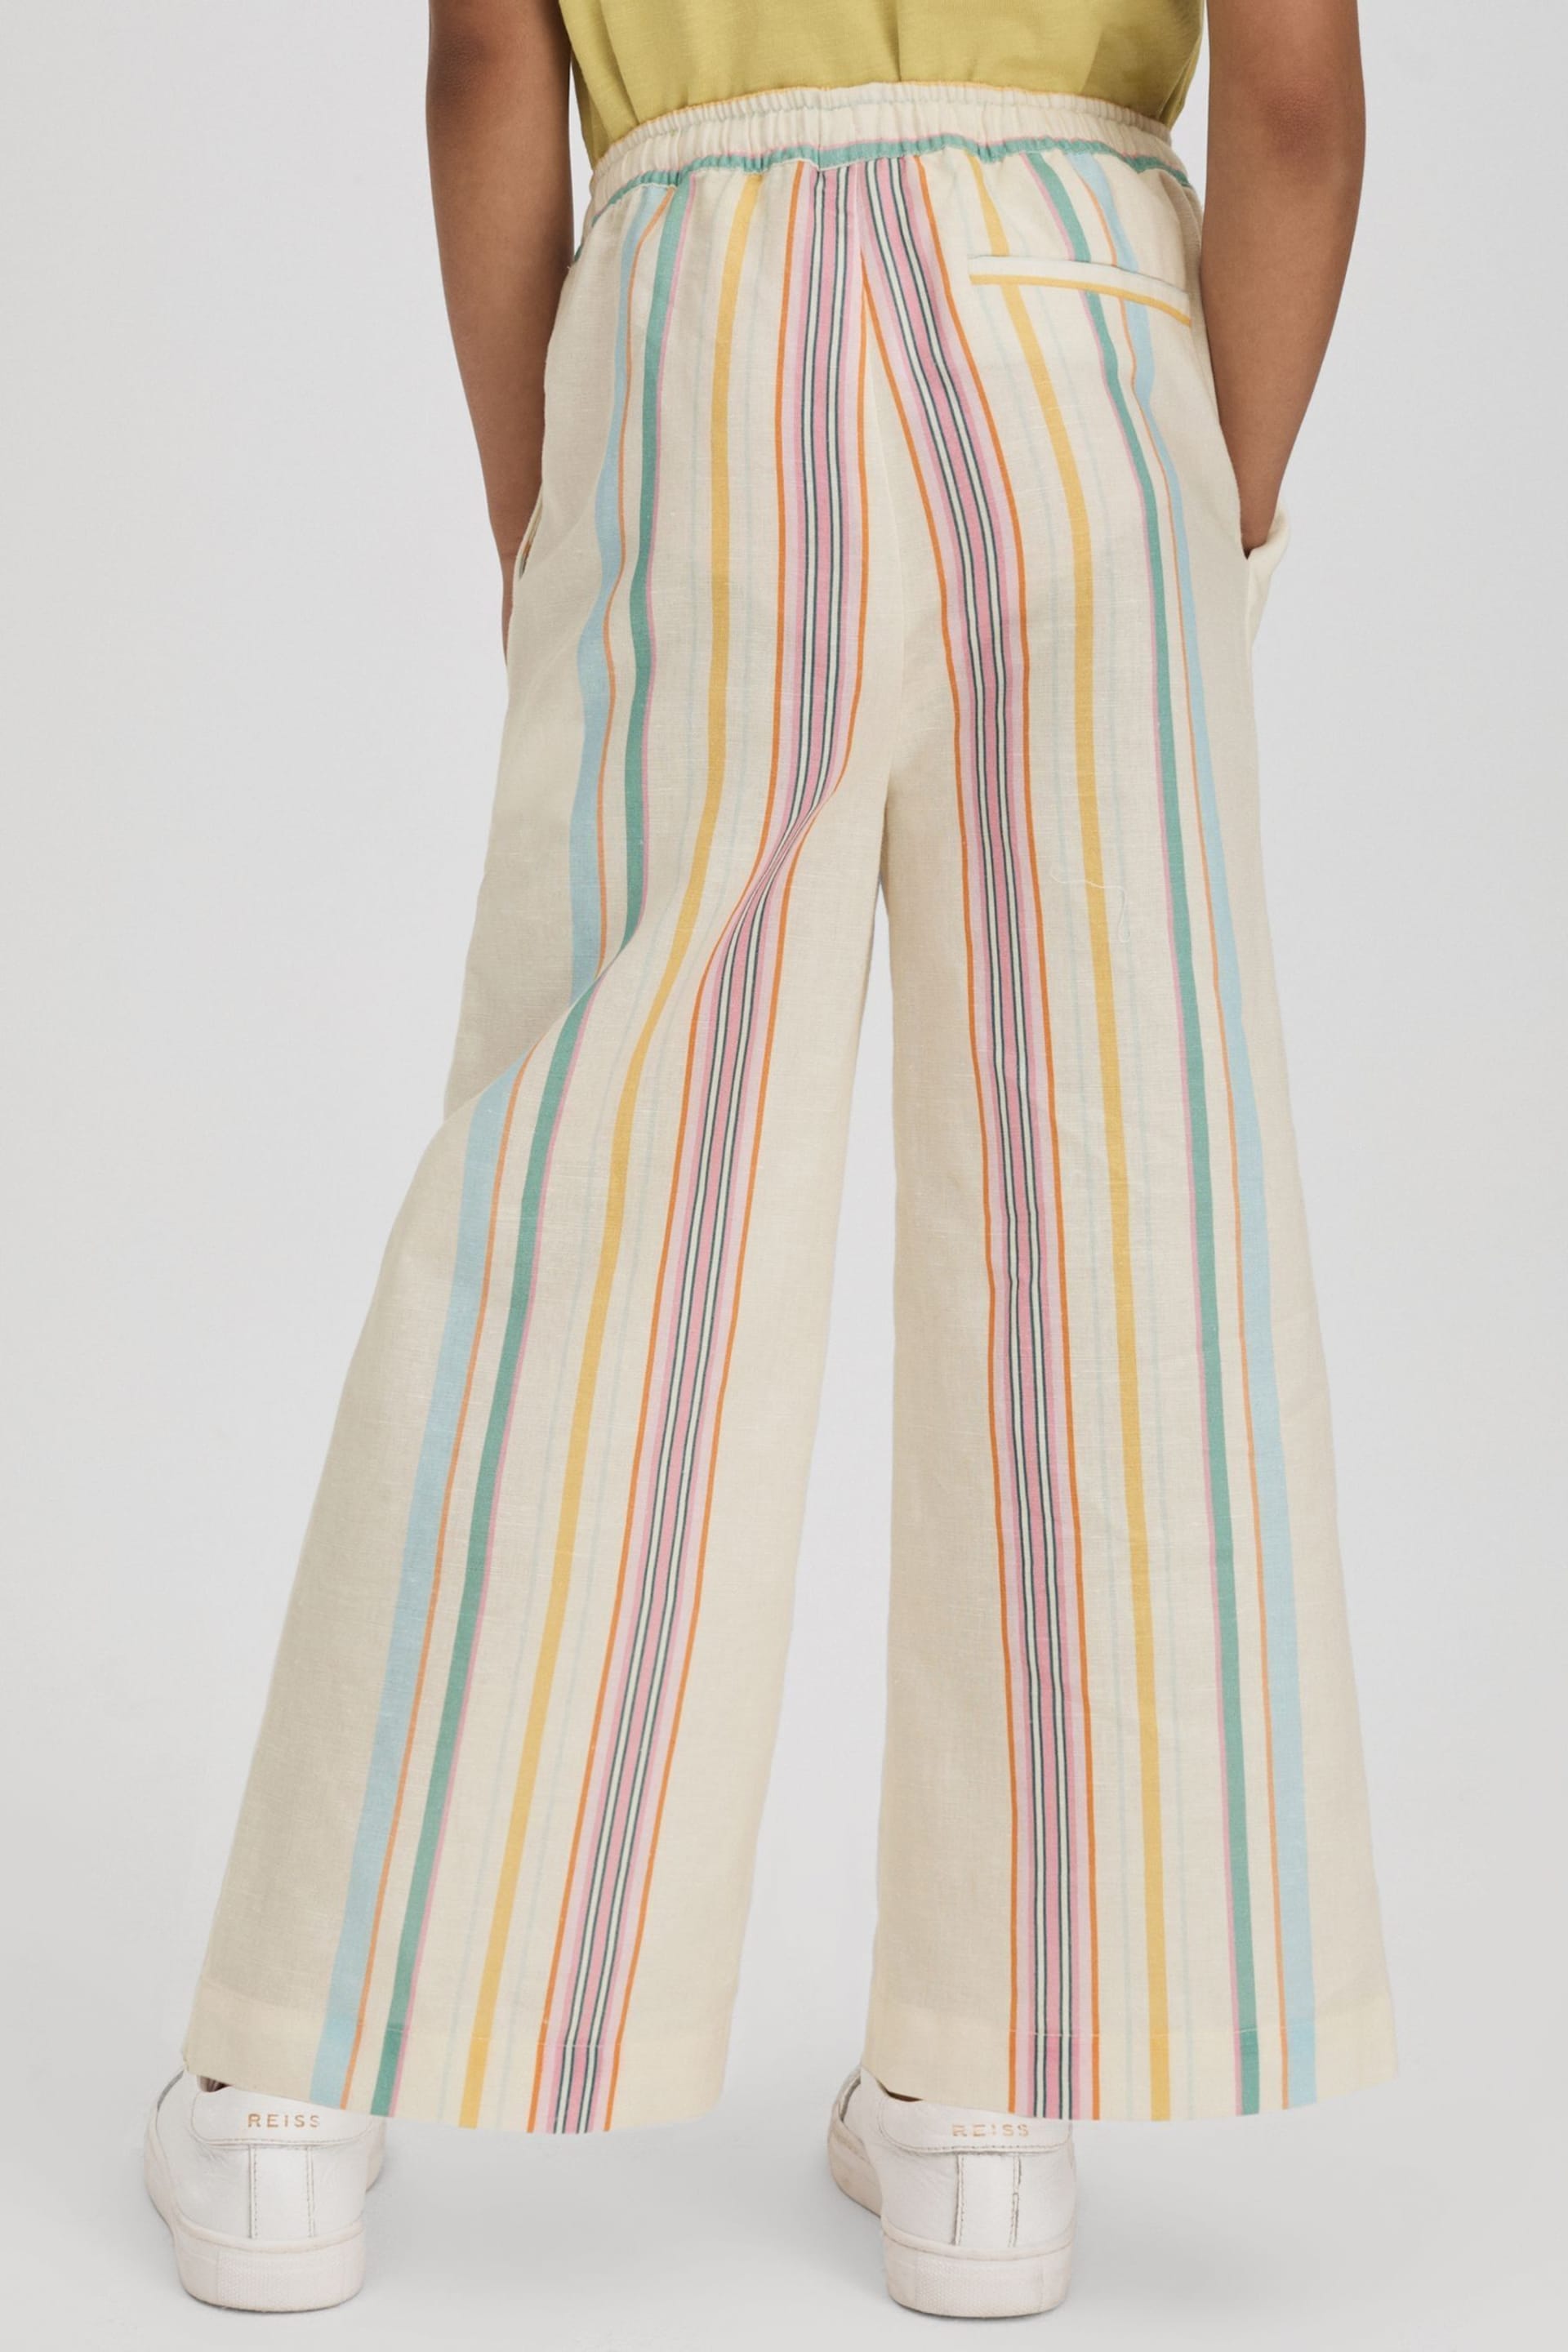 Reiss Multi Cleo Senior Linen Drawstring Trousers - Image 5 of 6